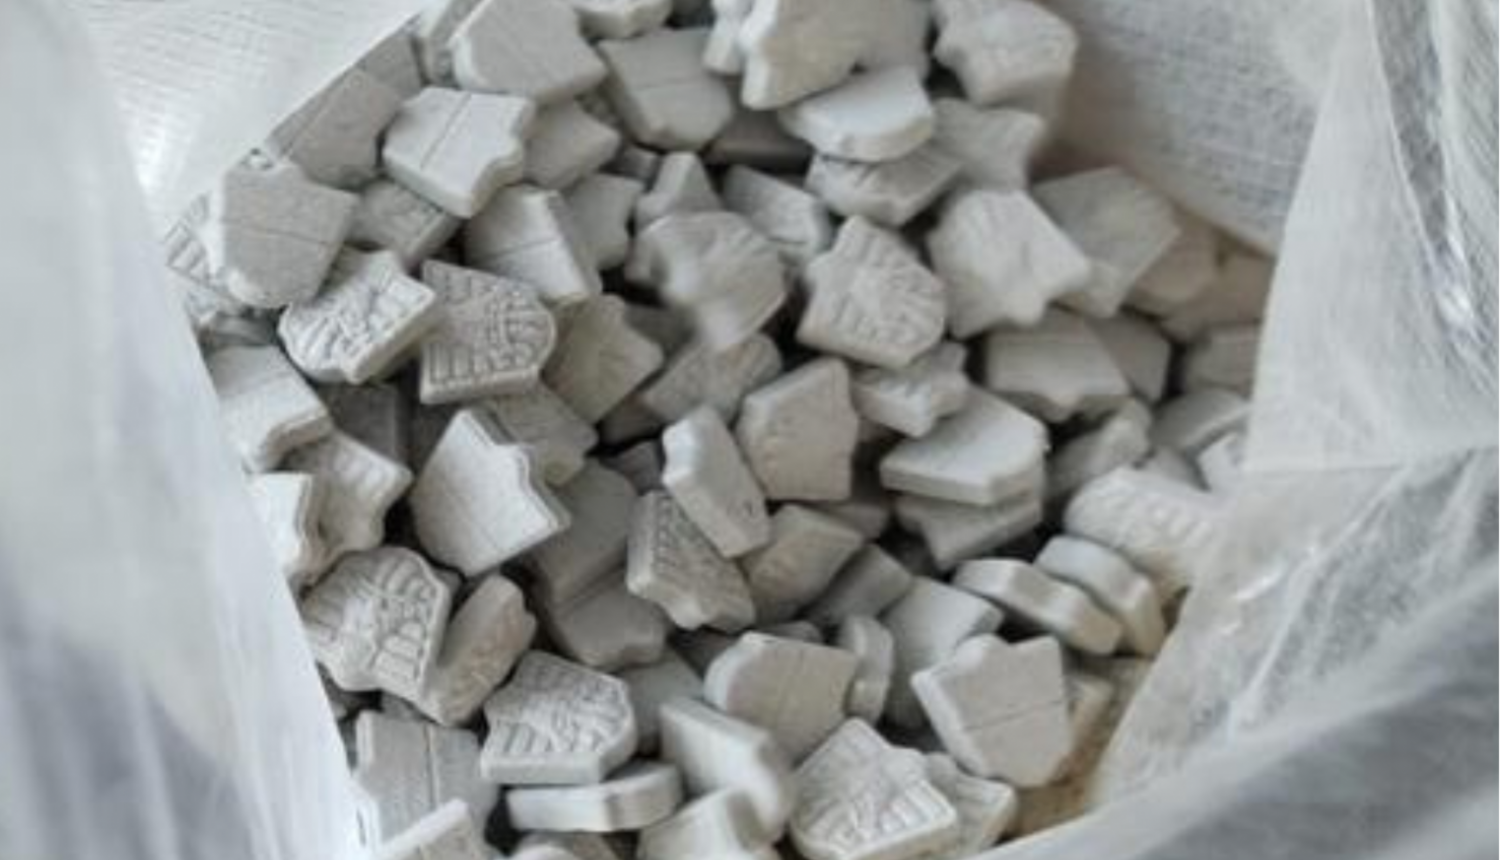 Atvērts polietilēna maiss un tajā redzamas daudz pelēkas MDMA tabletes 